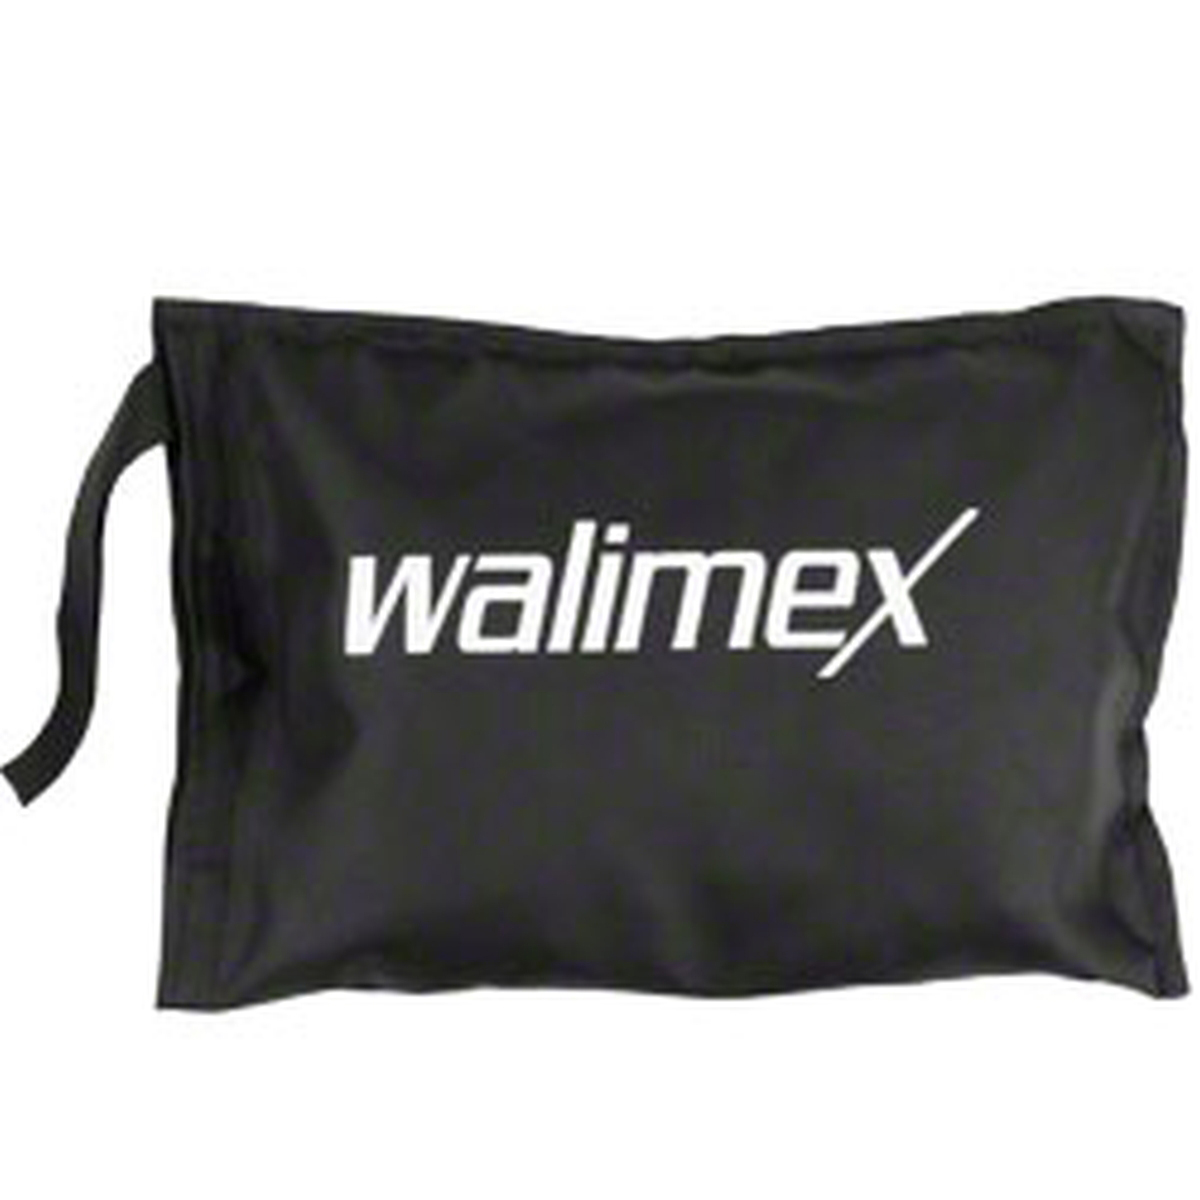 Walimex Universal Softbox 15x20 cm f. Kompaktblitze